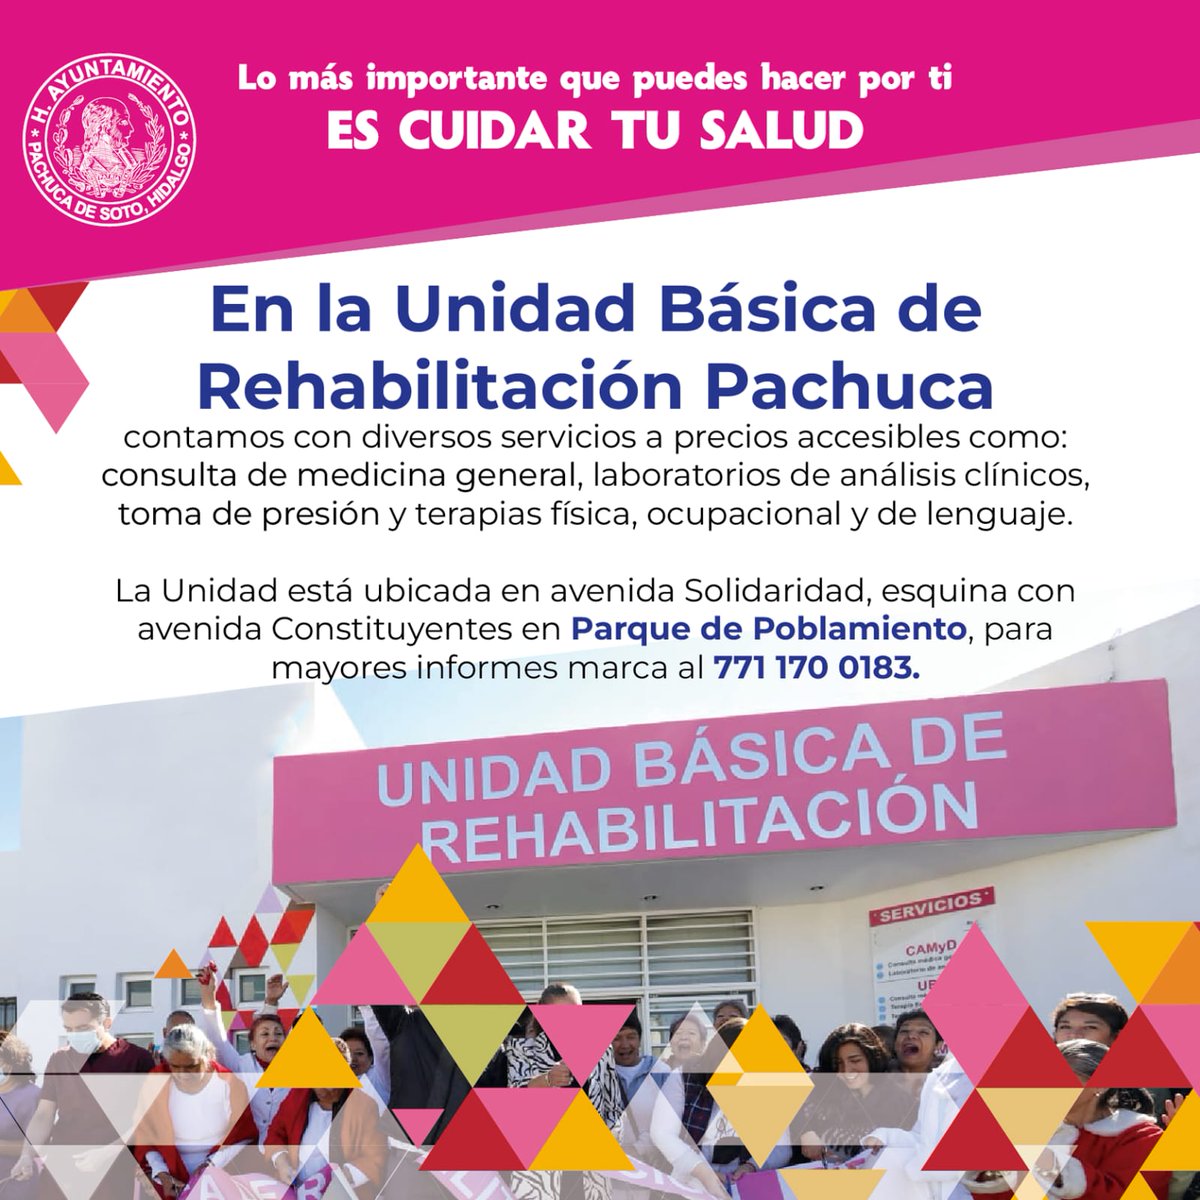 Lo más importante que puedes hacer por ti en cuidar tu salud en la Unidad Básica de Rehabilitación de Pachuca Contacta para más información ☎️7711700183 #rehabilitacion #Pachuca #Salud @PachucaGob